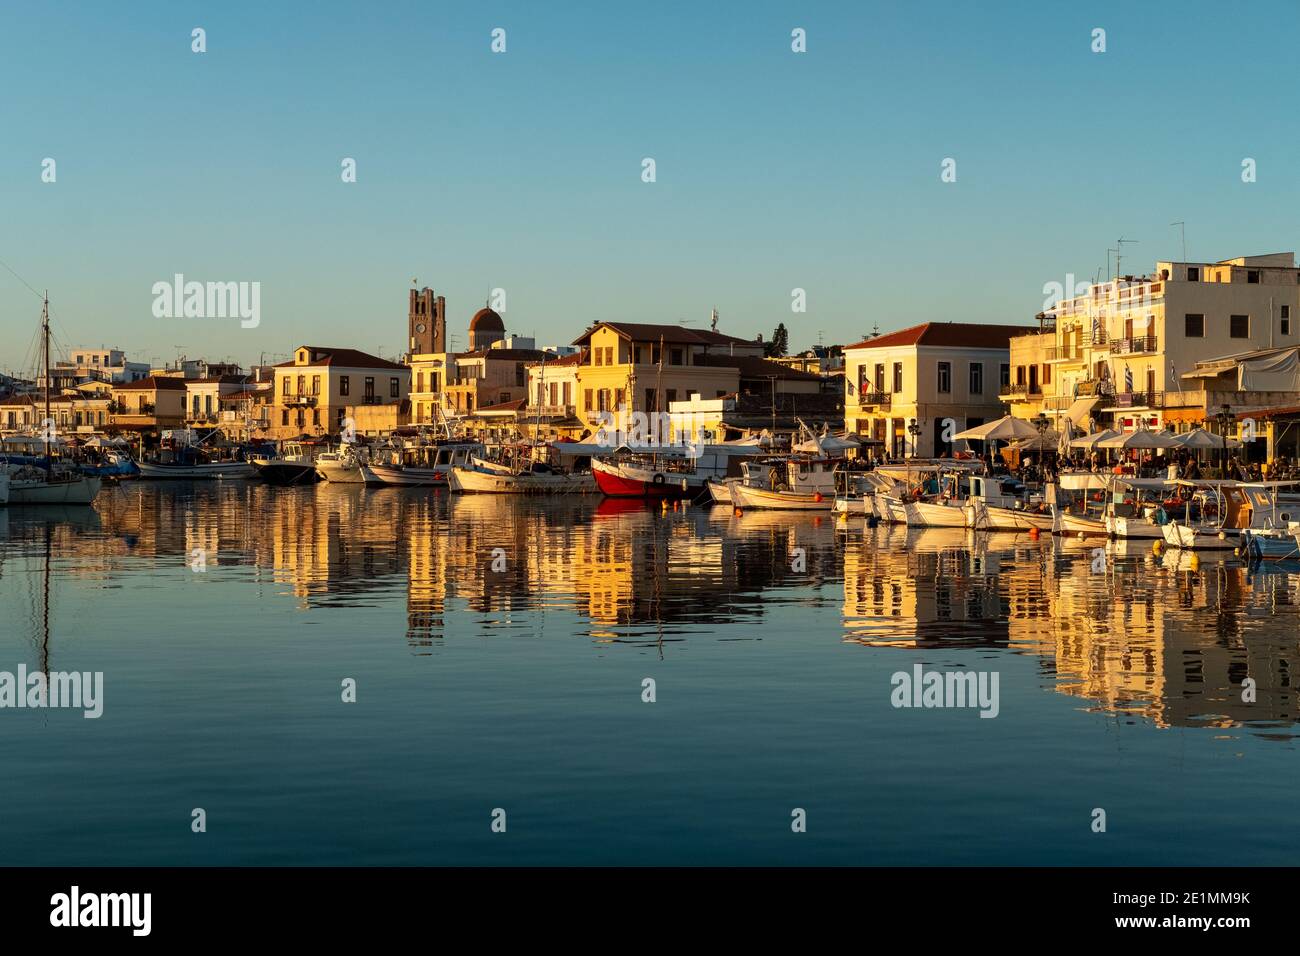 Port de la ville d'Aegina Egina avec bateaux de pêche et bâtiments rustiques de l'île Saronique près d'Athènes, Golfe Saronique, Grèce Banque D'Images